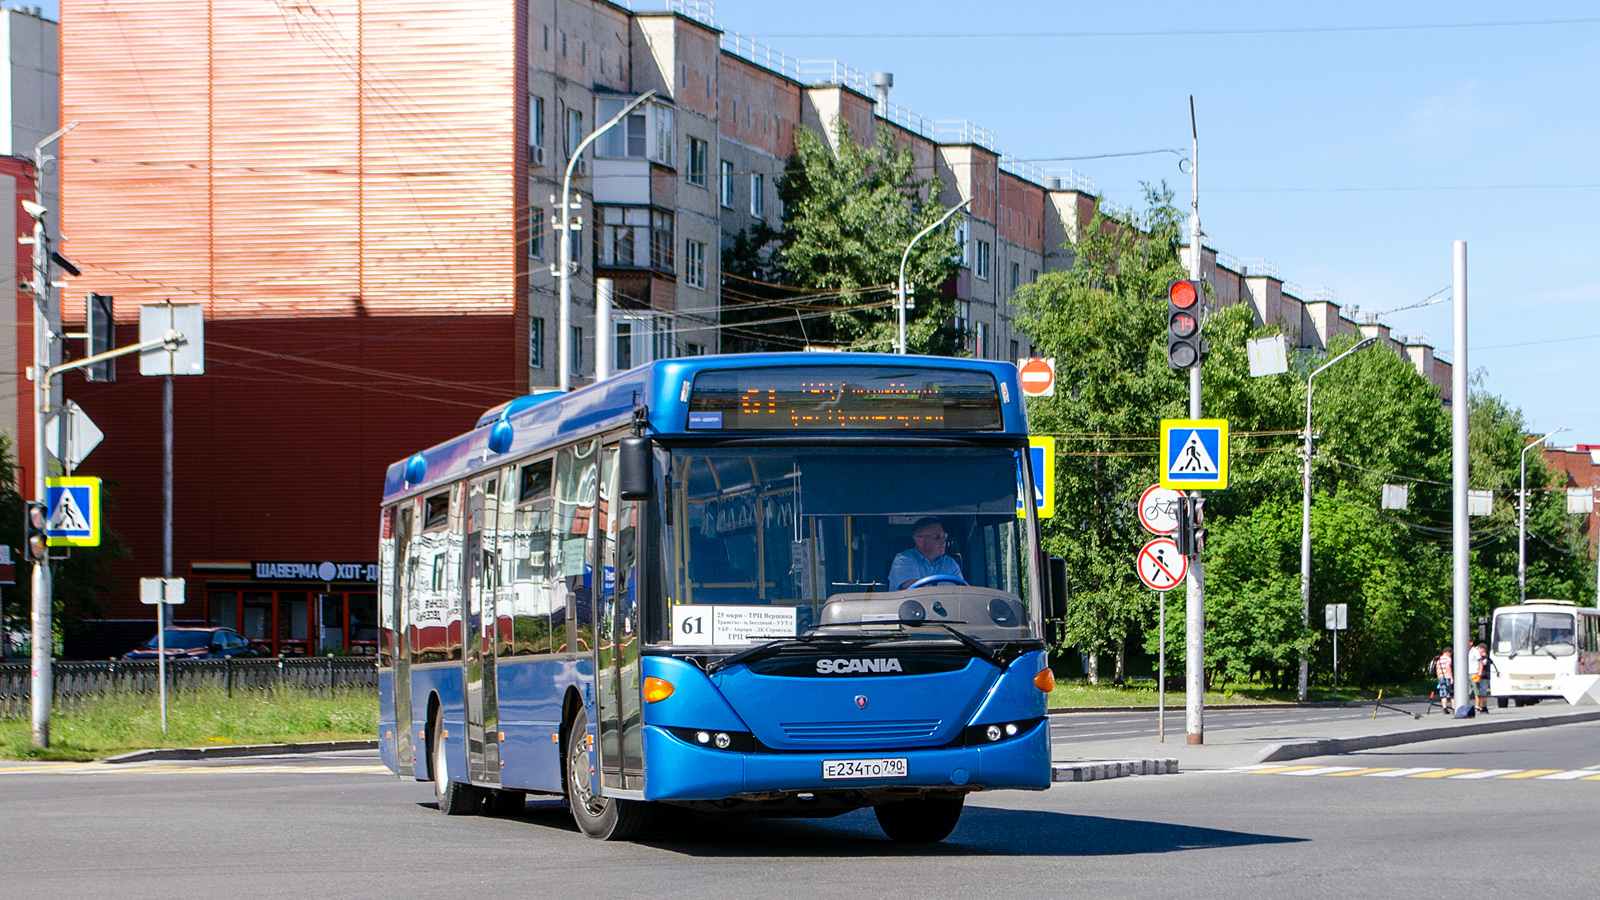 Chanty-Mansyjski Okręg Autonomiczny, Scania OmniLink II (Scania-St.Petersburg) Nr Е 234 ТО 790